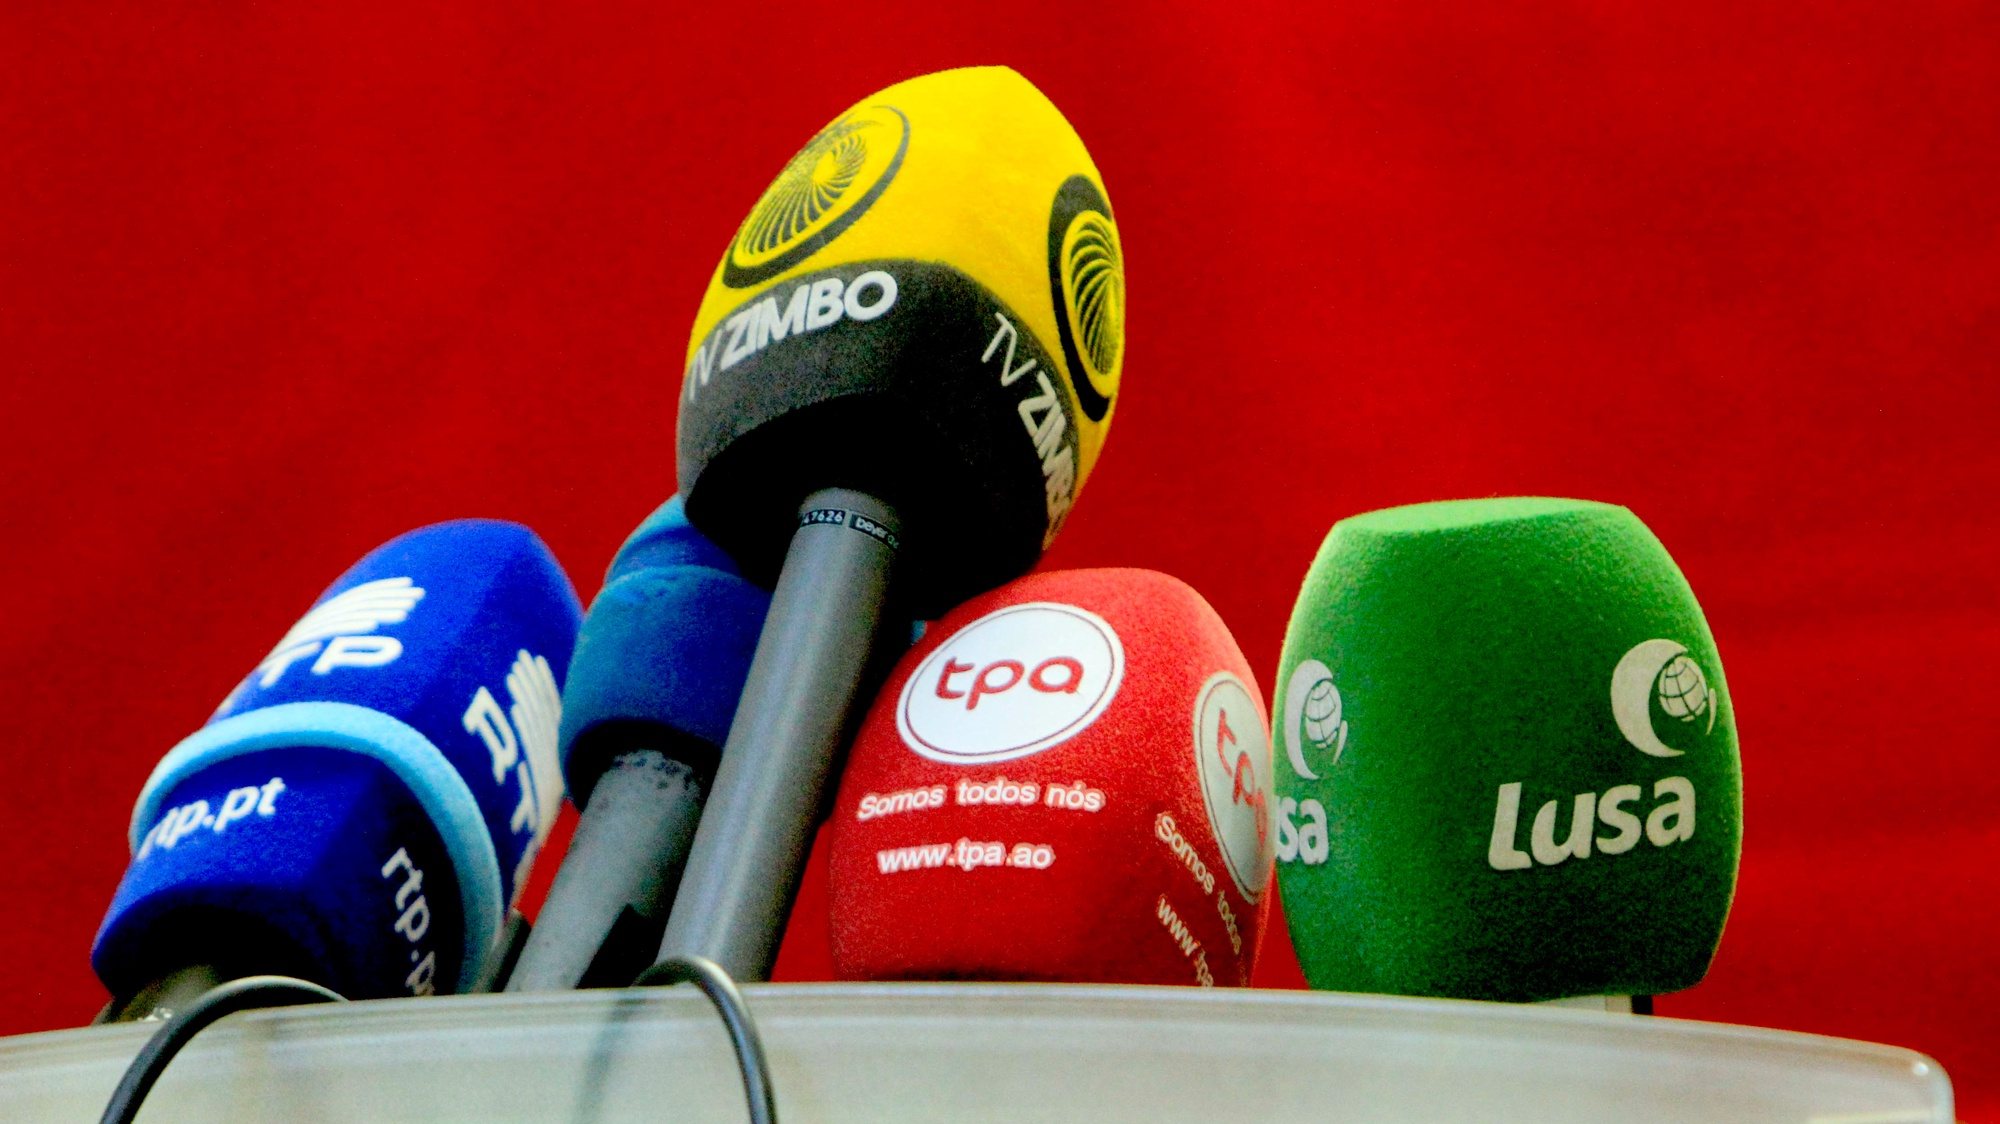 Microfones de orgãos de comunicação social de Angola, 31 de julho de 2019.  AMPE ROGÉRIO/LUSA